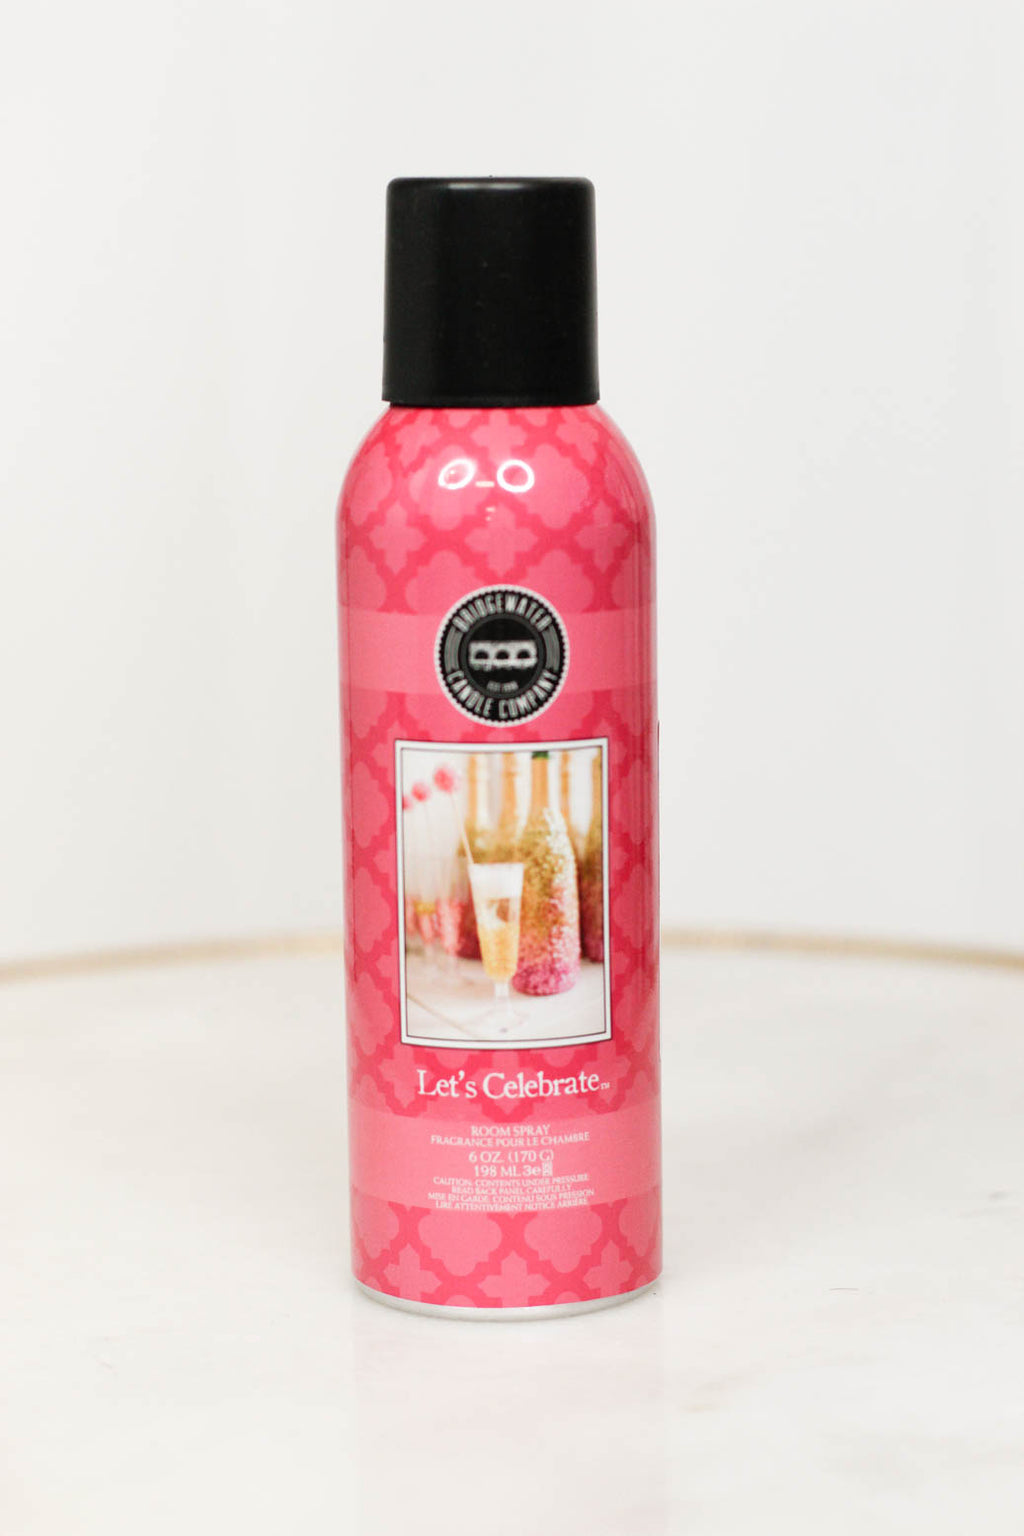 Sweet Grace Wrinkle Release Spray — La Boujee Boutique